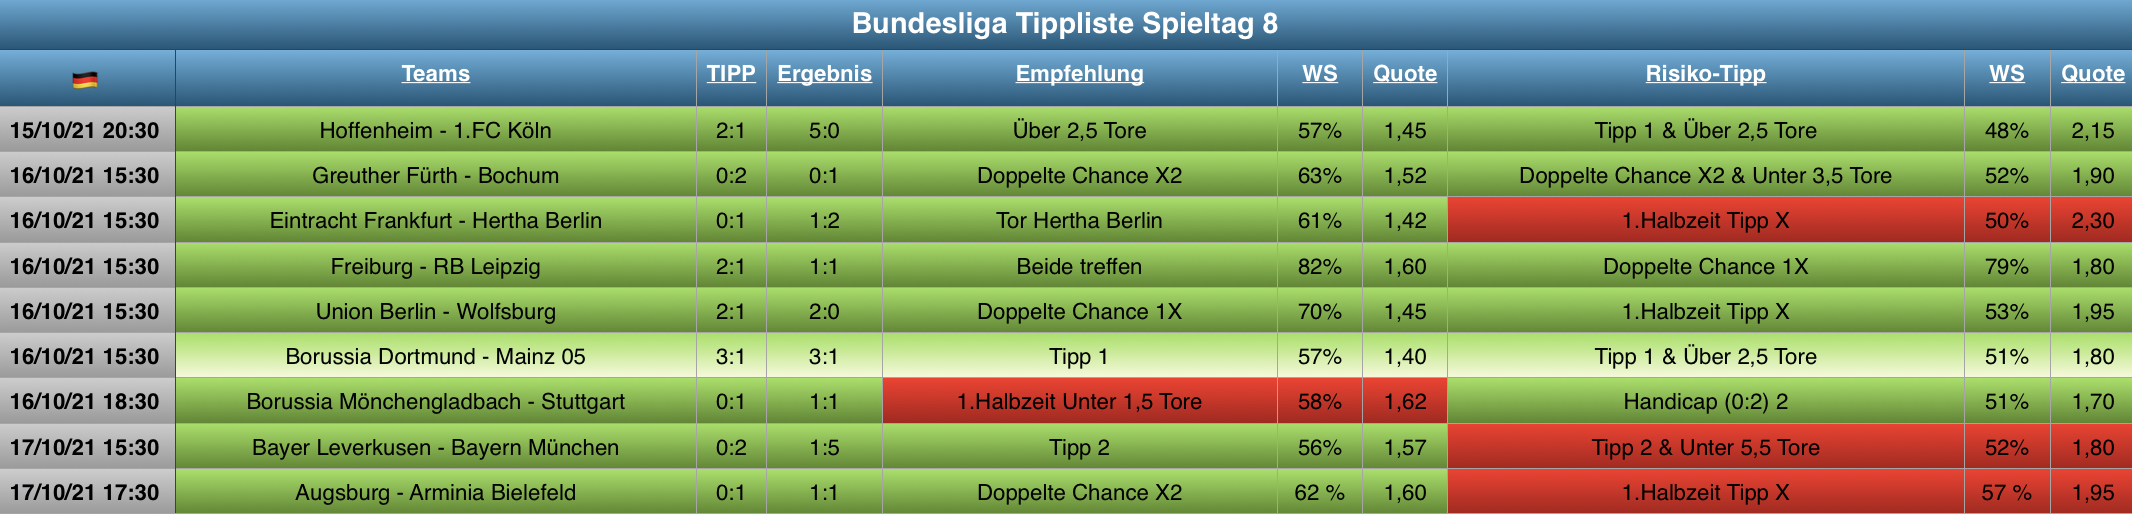 Auswertung Bundesliga Tippliste Spieltag 8 (2021)